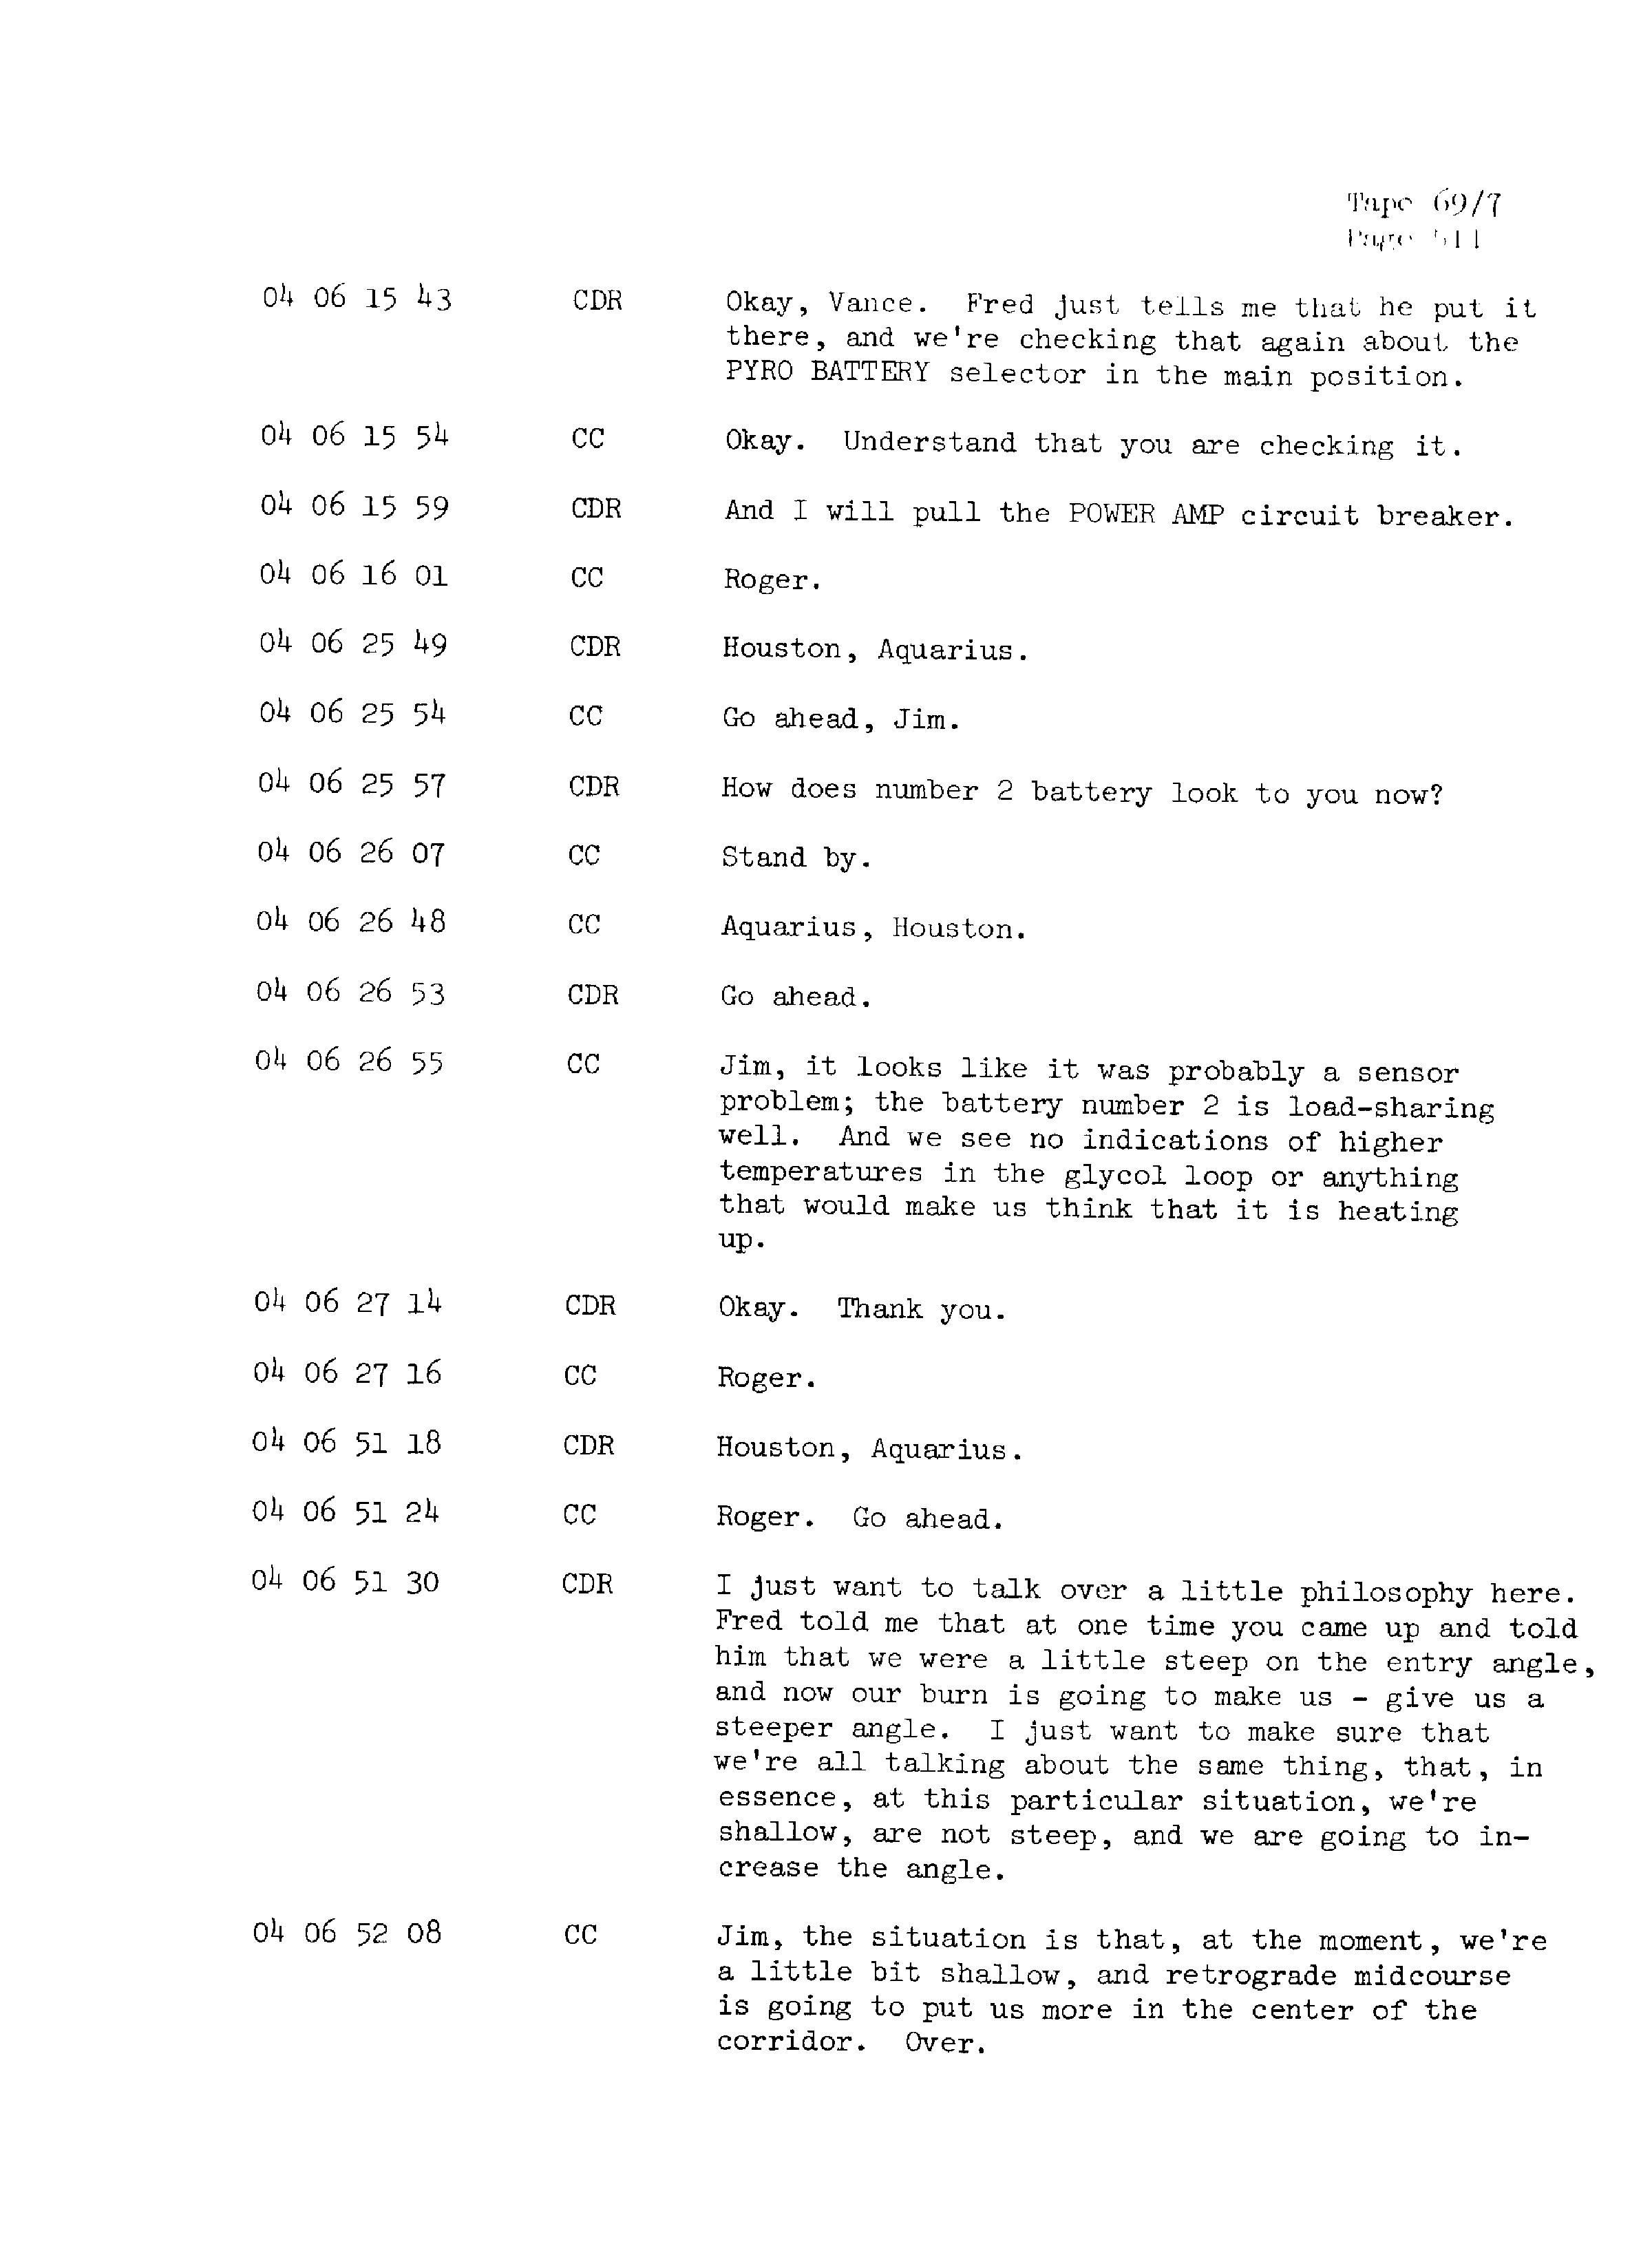 Page 518 of Apollo 13’s original transcript